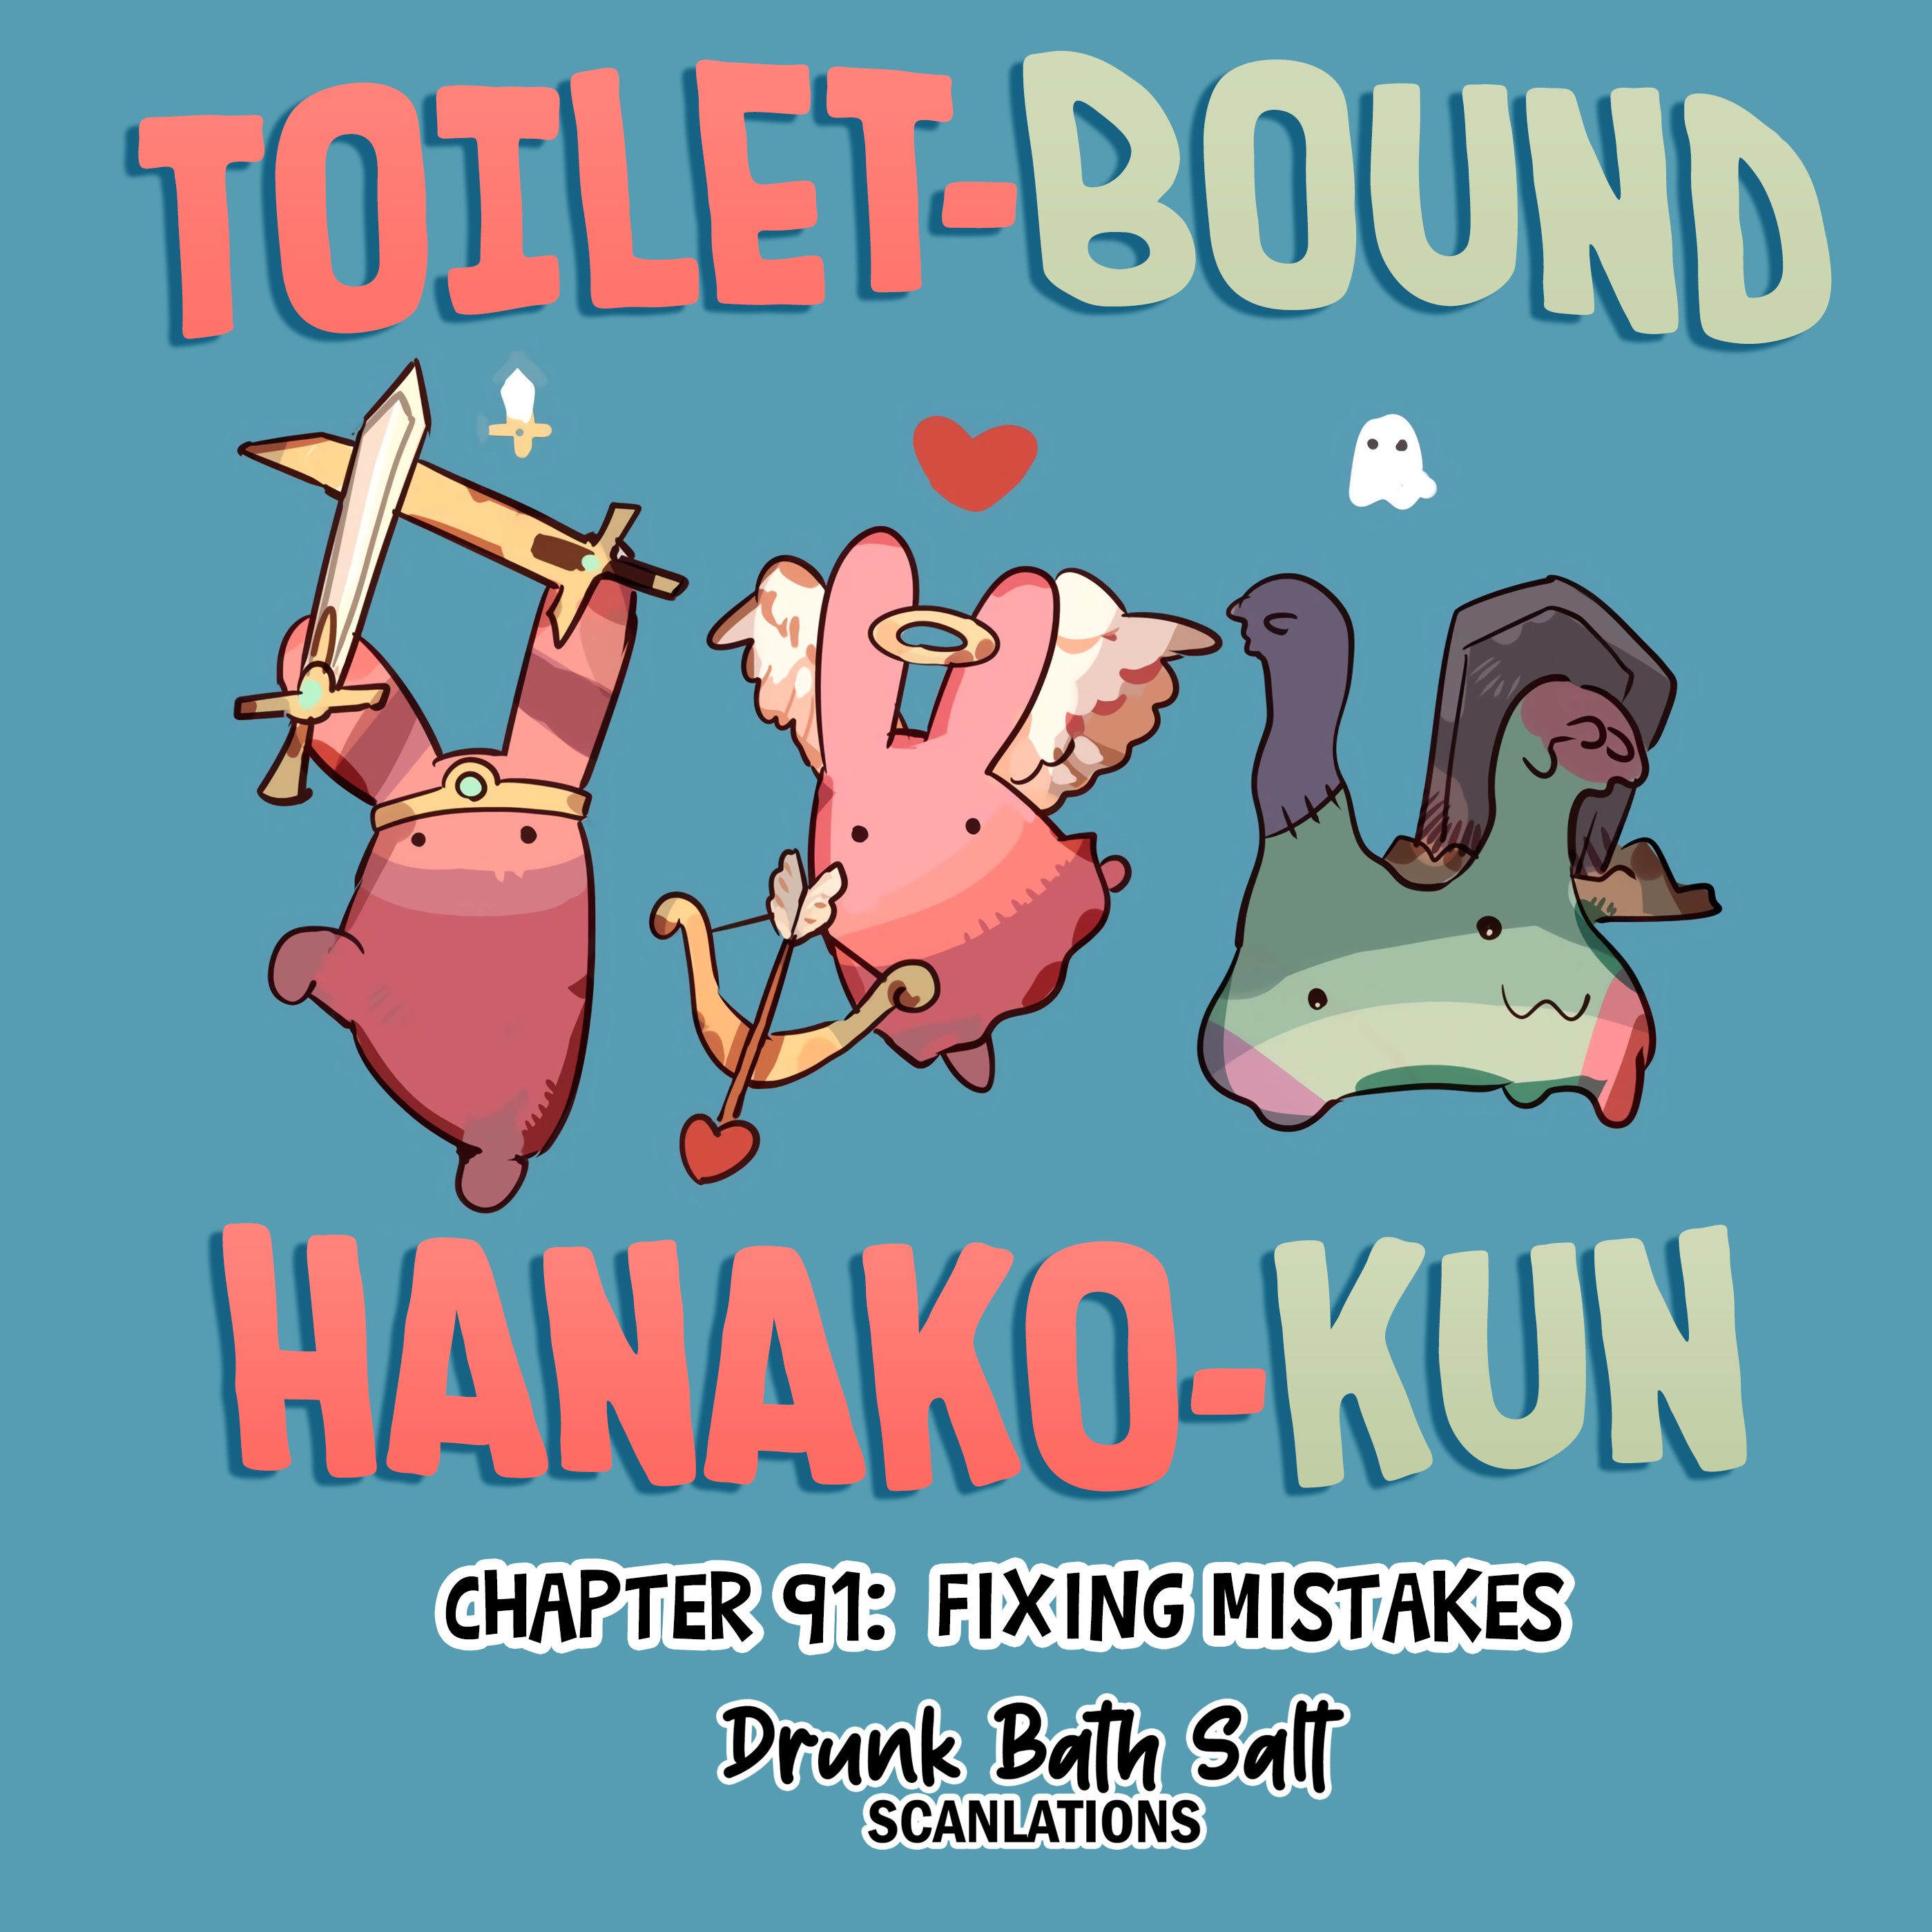 Toilet-bound Hanako-kun chapter 91, Jibaku Shounen Hanako-kun Chapter 91